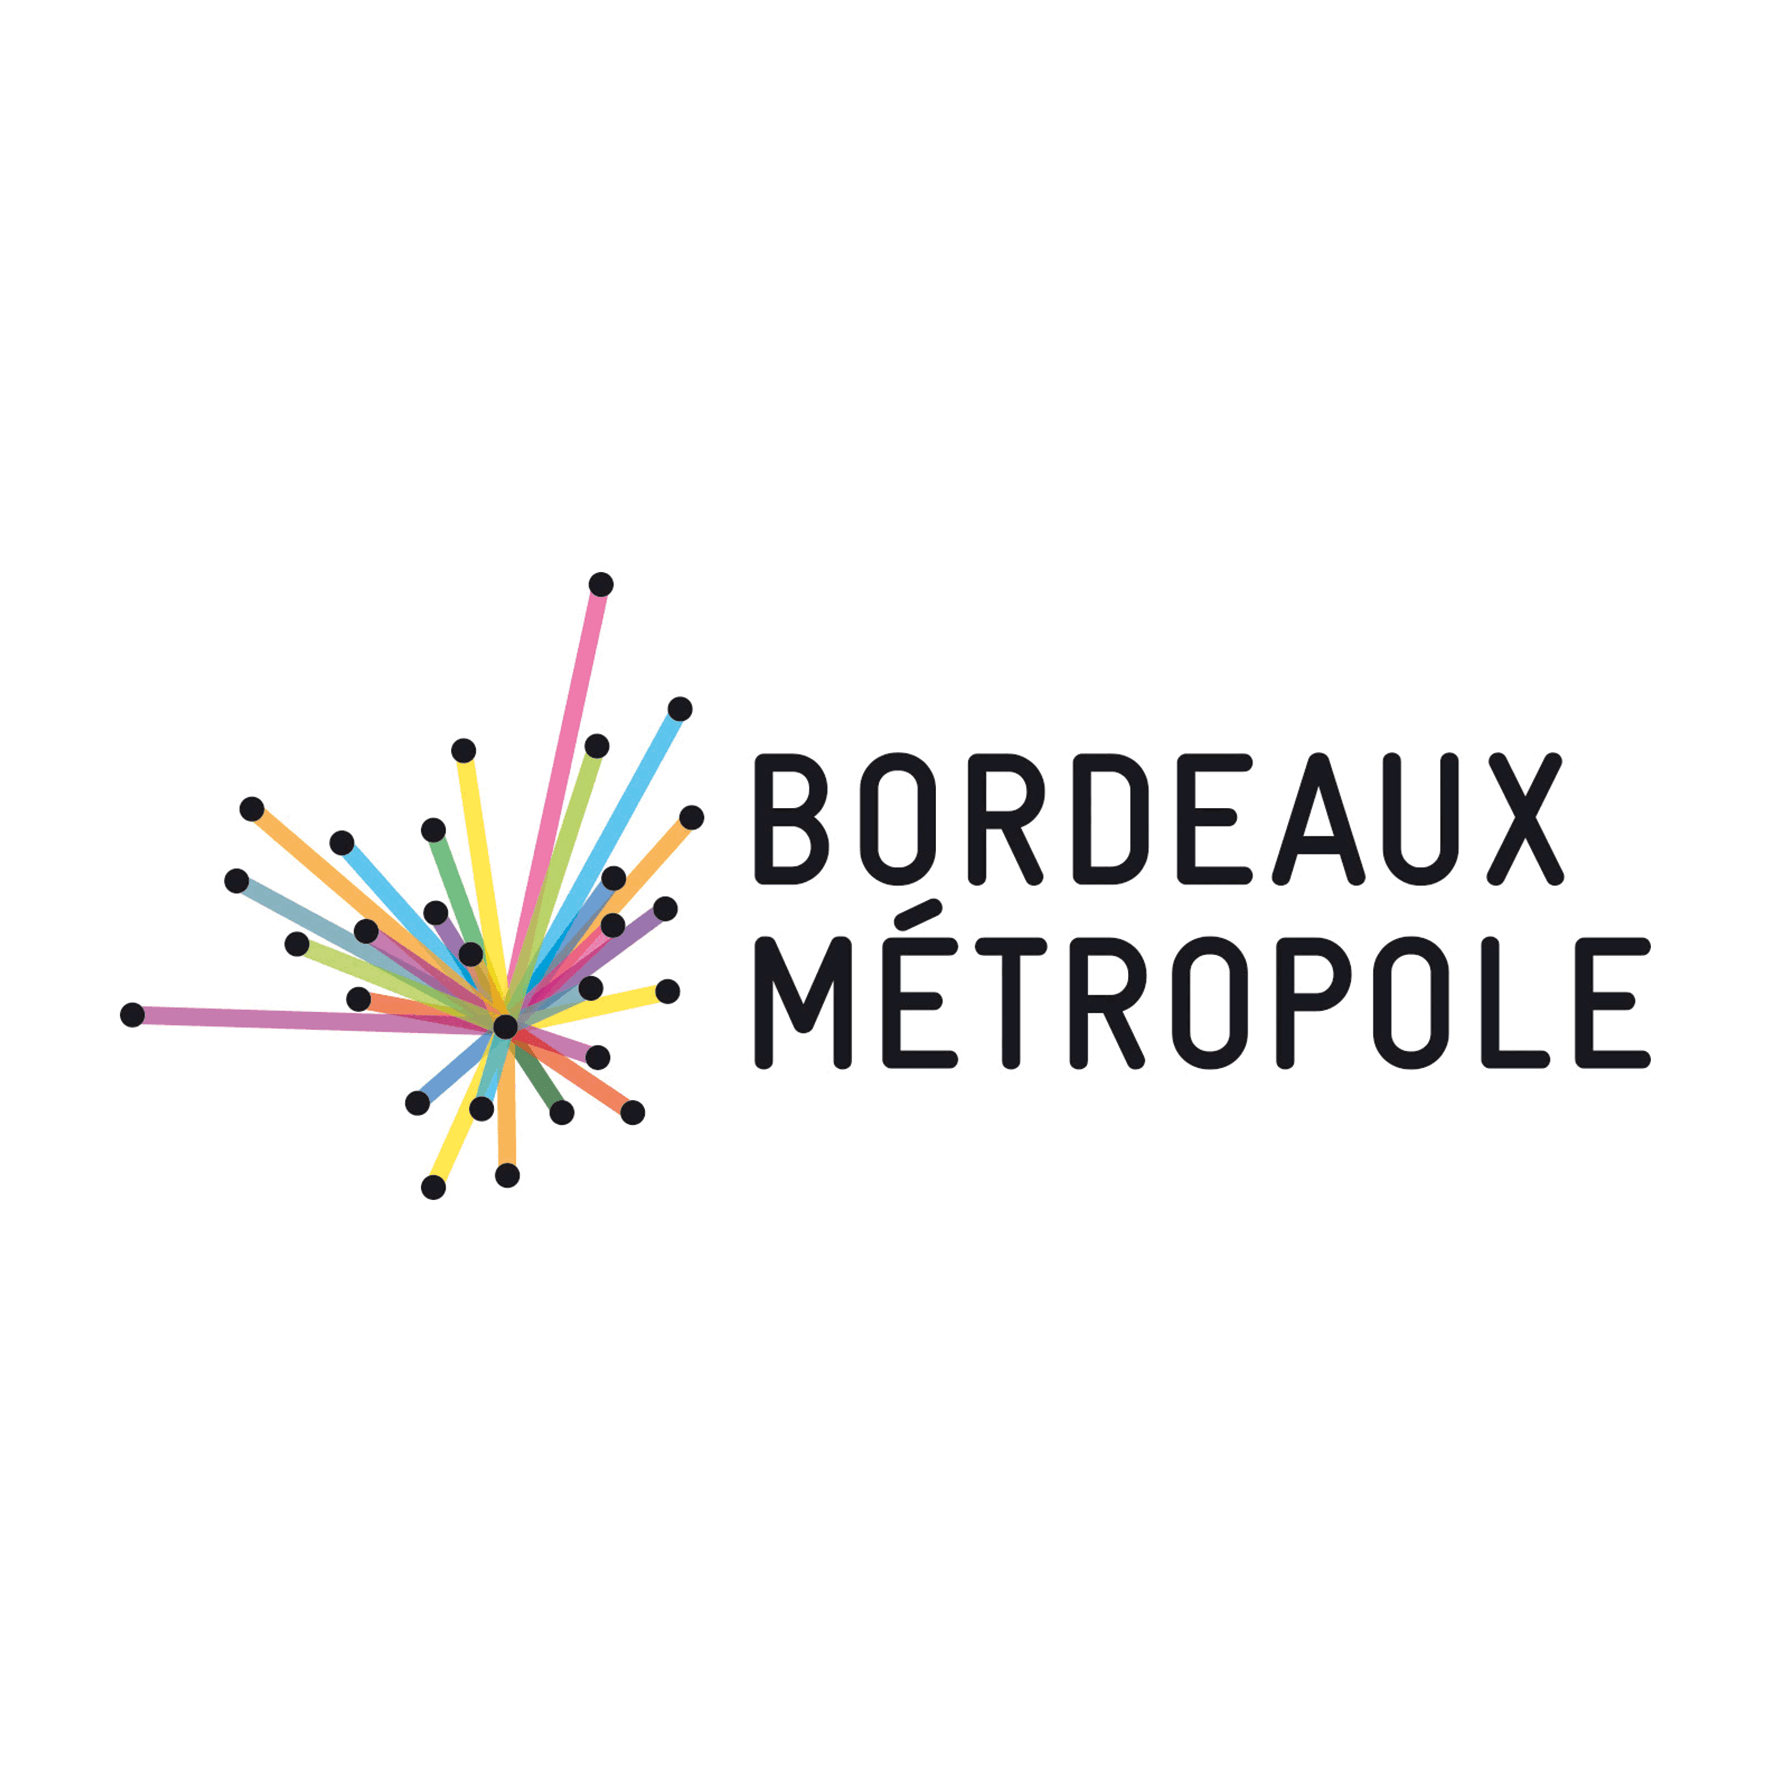 Bordeaux Métropole 1772x1772 CMJN